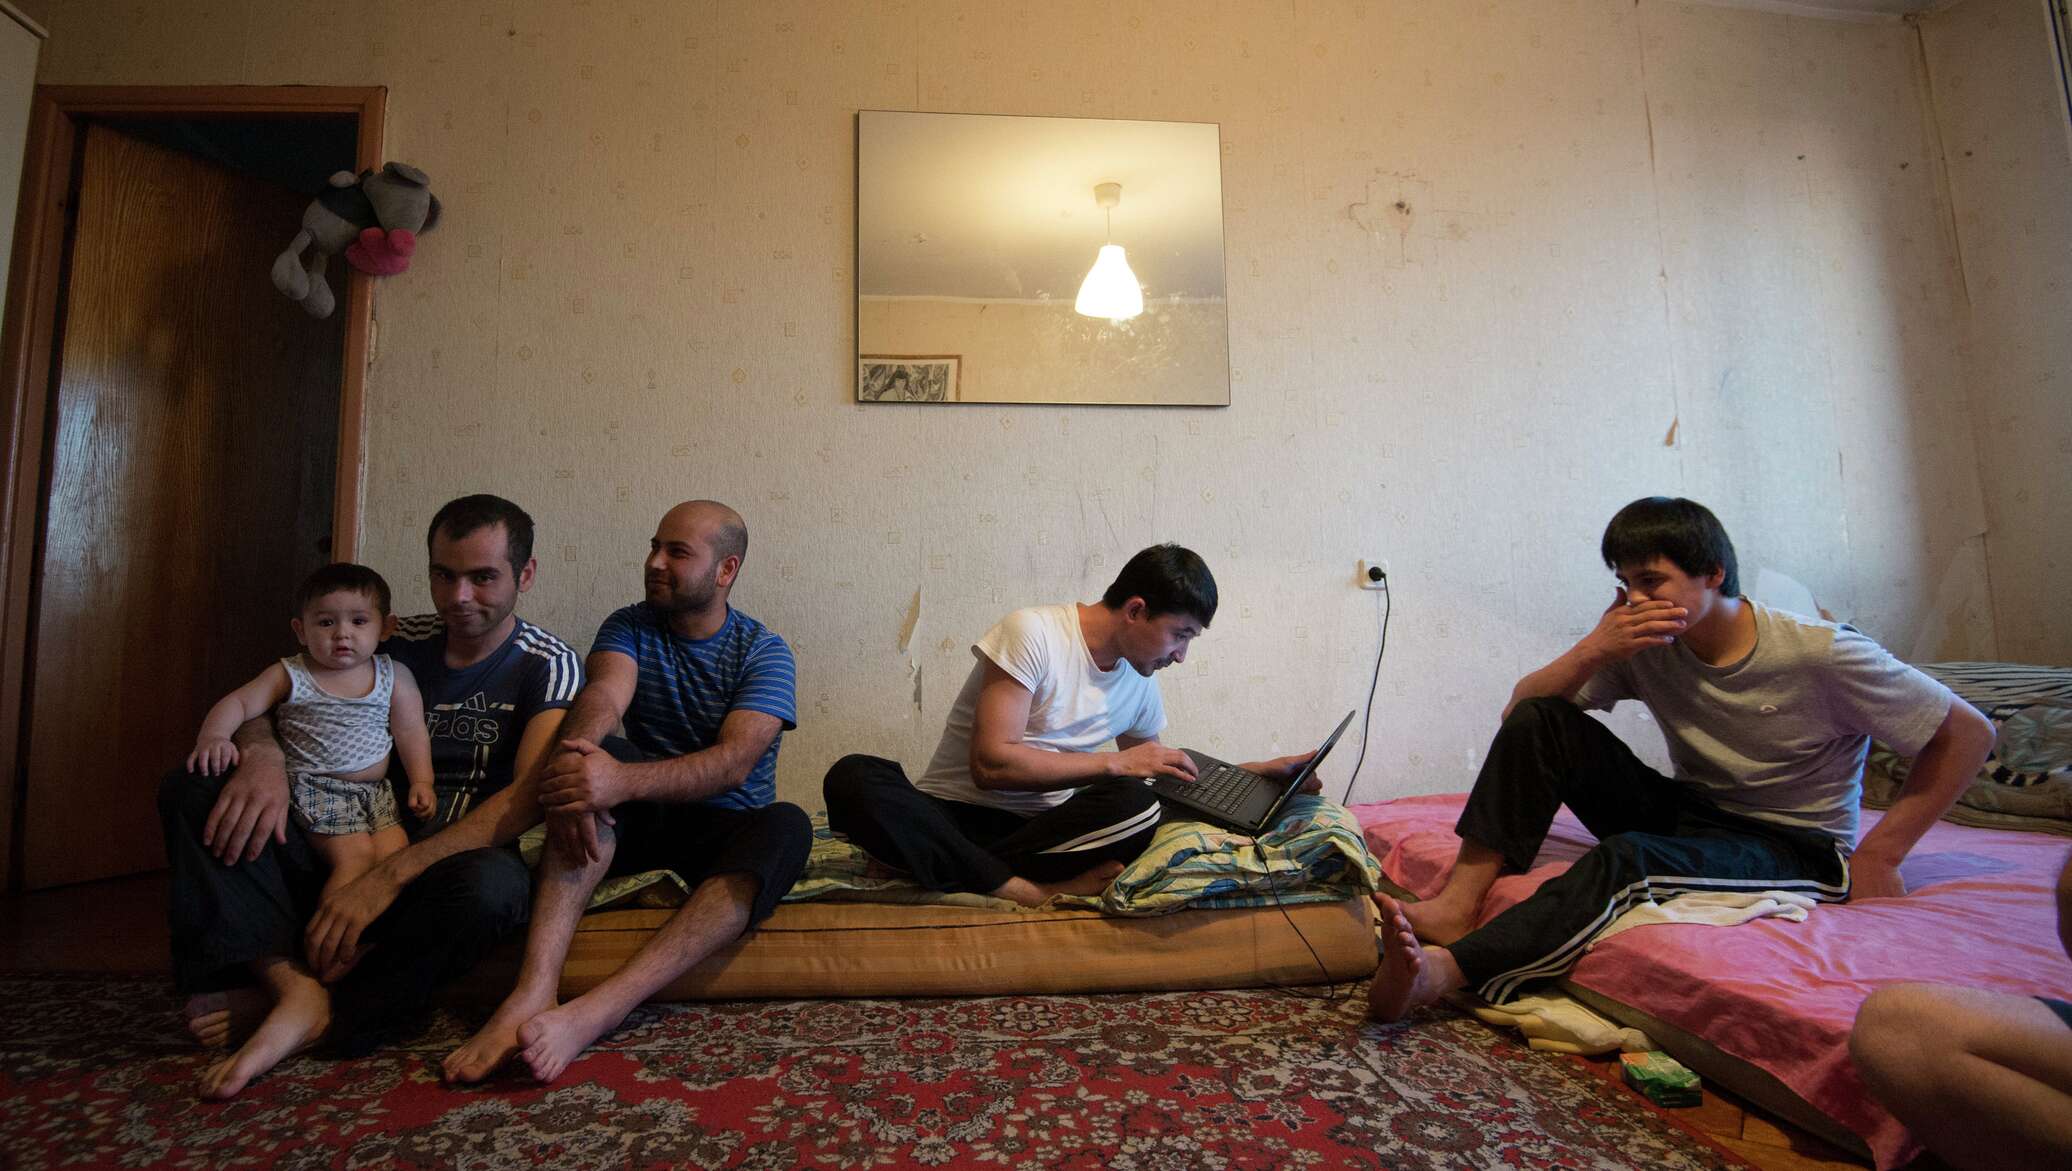 Таджикское скрытое. Мигранты в квартире. Гастарбайтеры в одной комнате. Таджики в квартире. Киргизы в квартире.